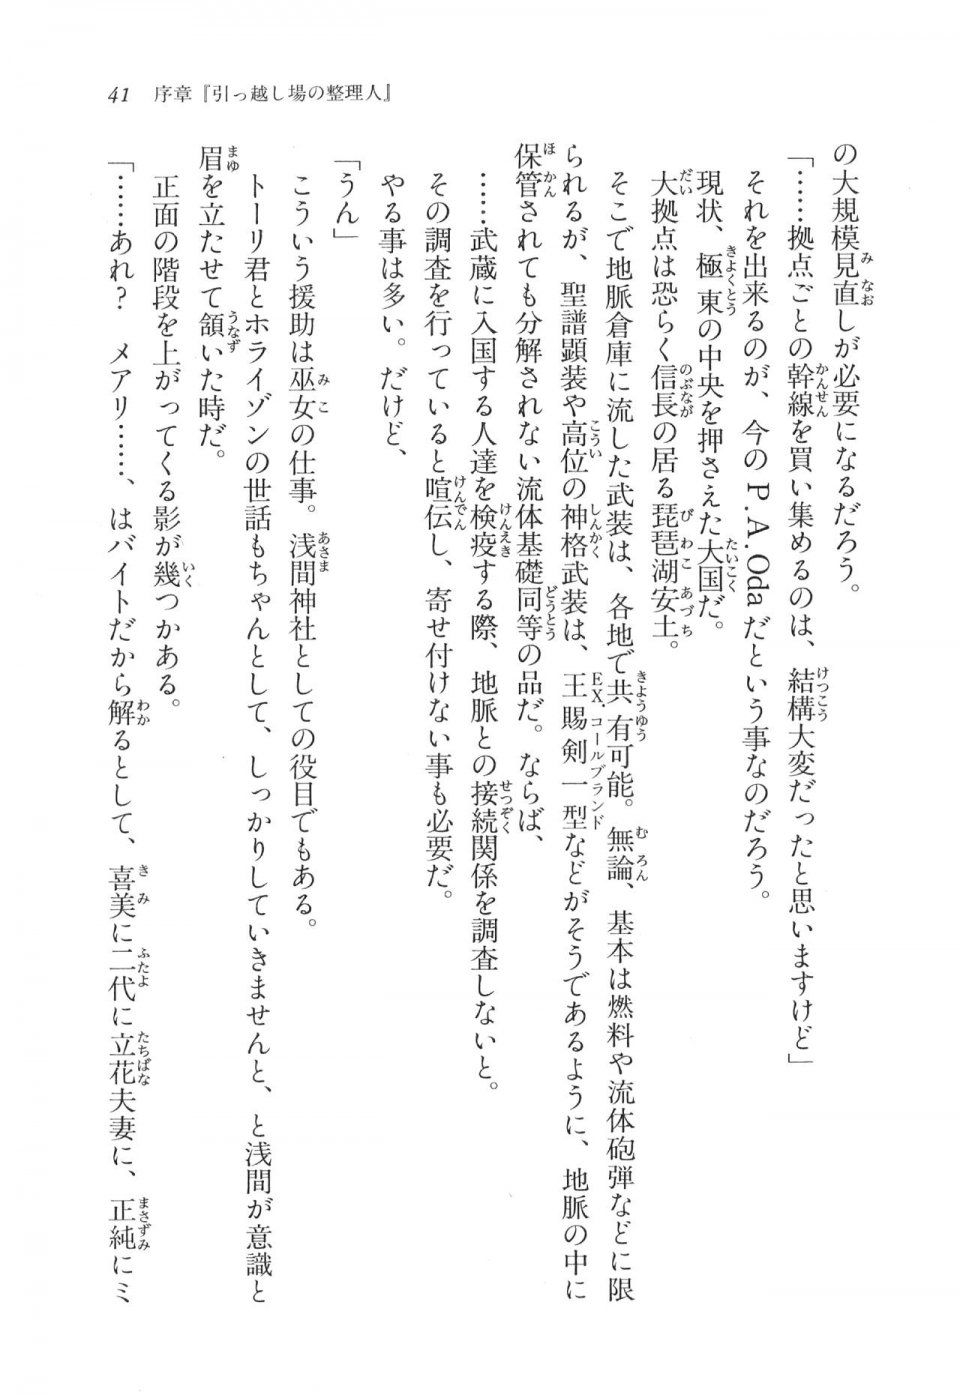 Kyoukai Senjou no Horizon LN Vol 11(5A) - Photo #42